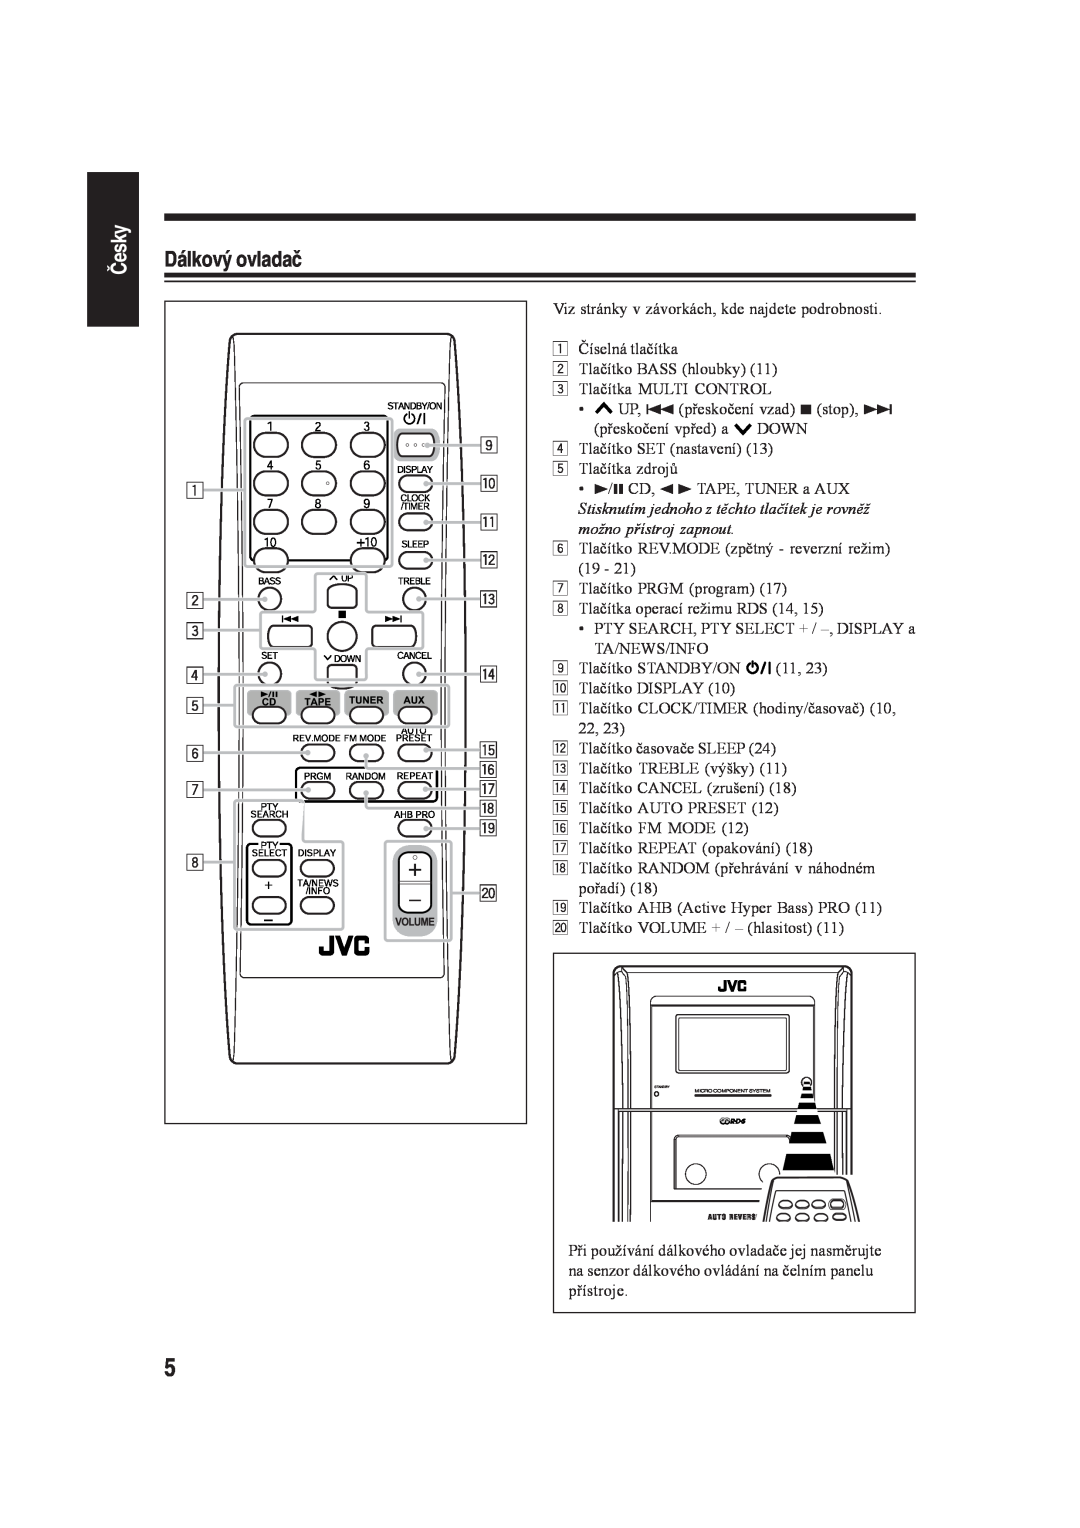 JVC CA-UXH35, SP-UXH35 manual Česky, Dálkový ovladač, Stisknutím jednoho z těchto tlačítek je rovněž, možno přístroj zapnout 